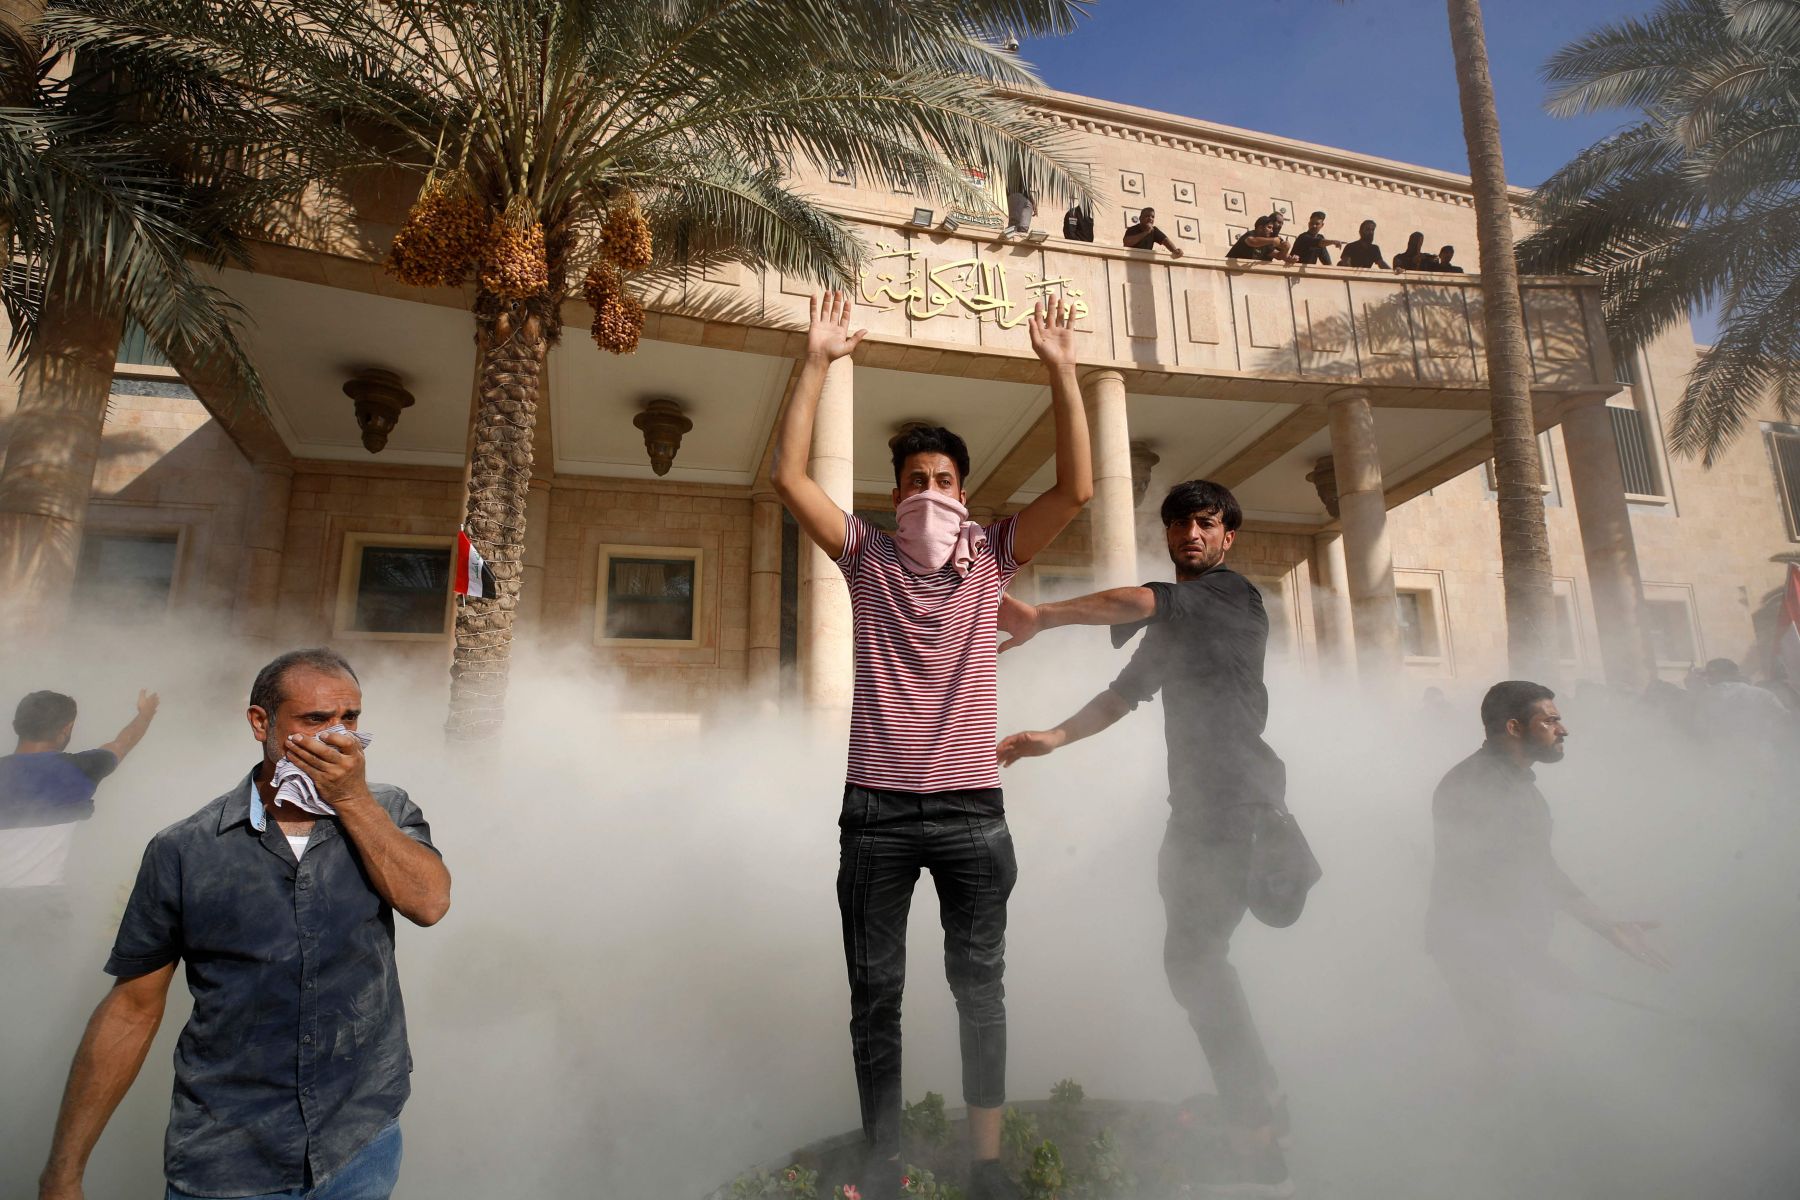 Ahmad Al-rubaye / AFP